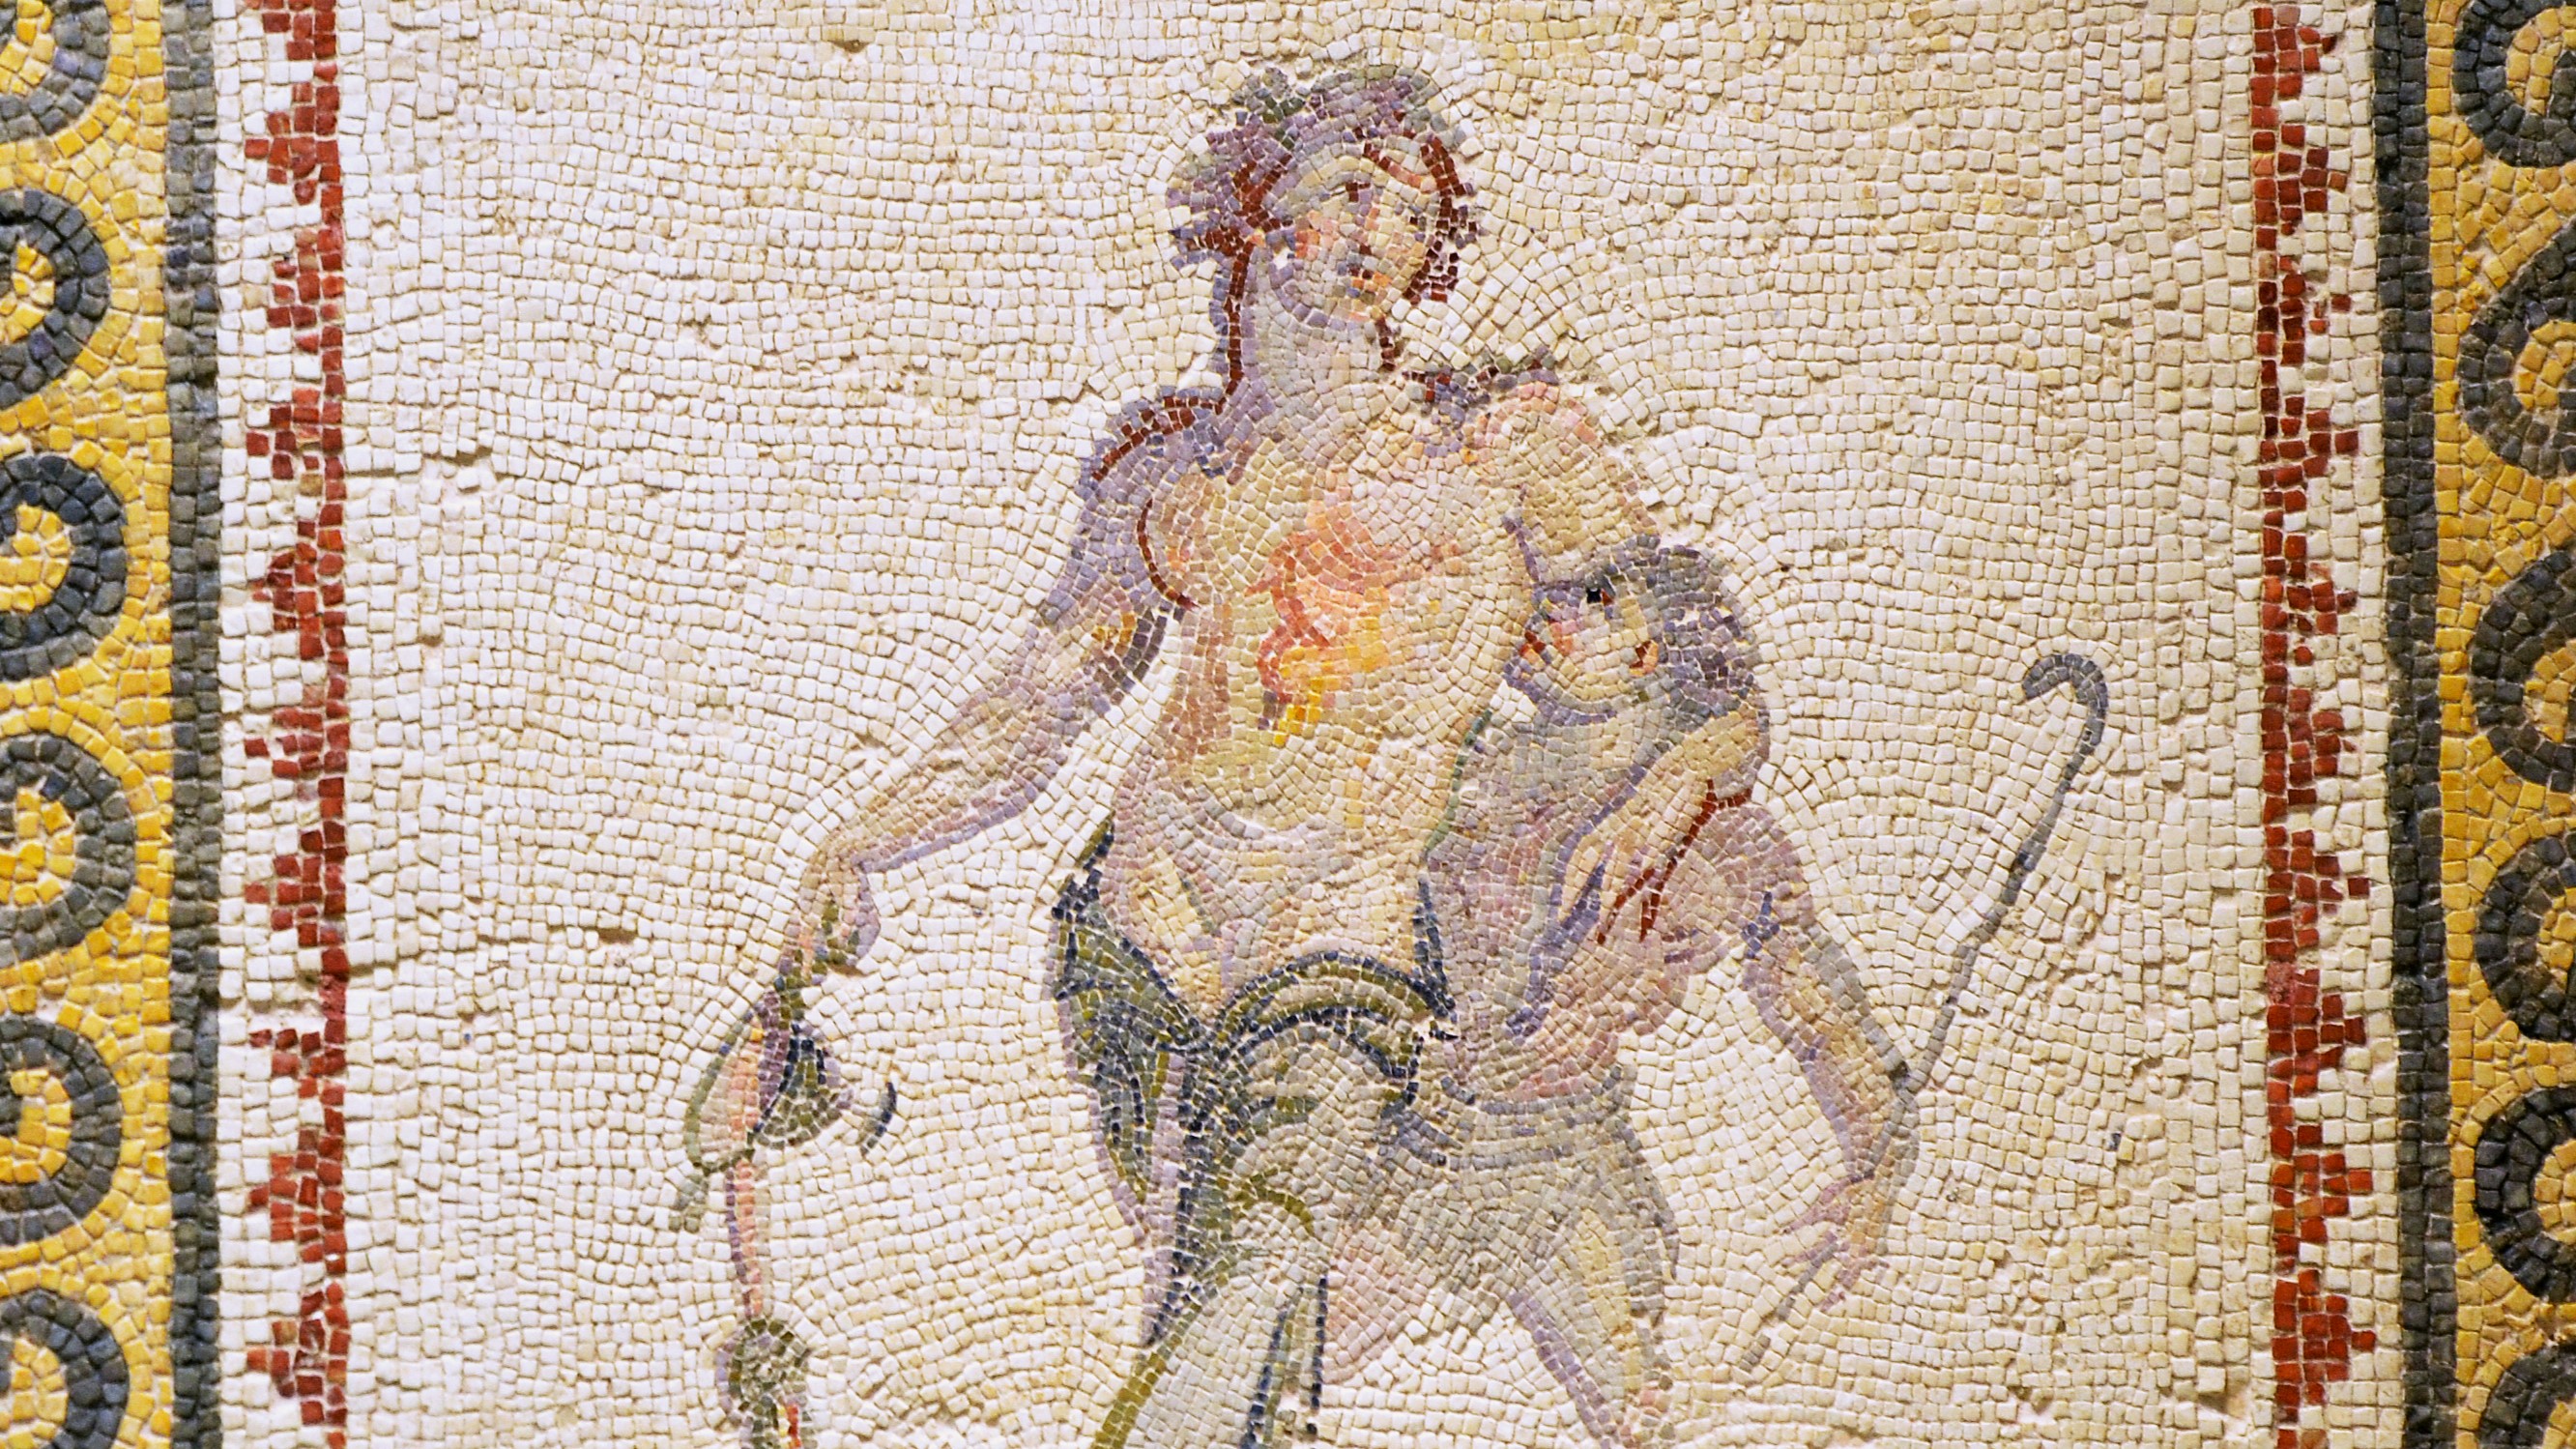 Représentation en mosaïque du dieu grec Dionysos provenant d’Antioche et datant du IIe-IIIe siècle (Wikimedia/Carole Raddato)